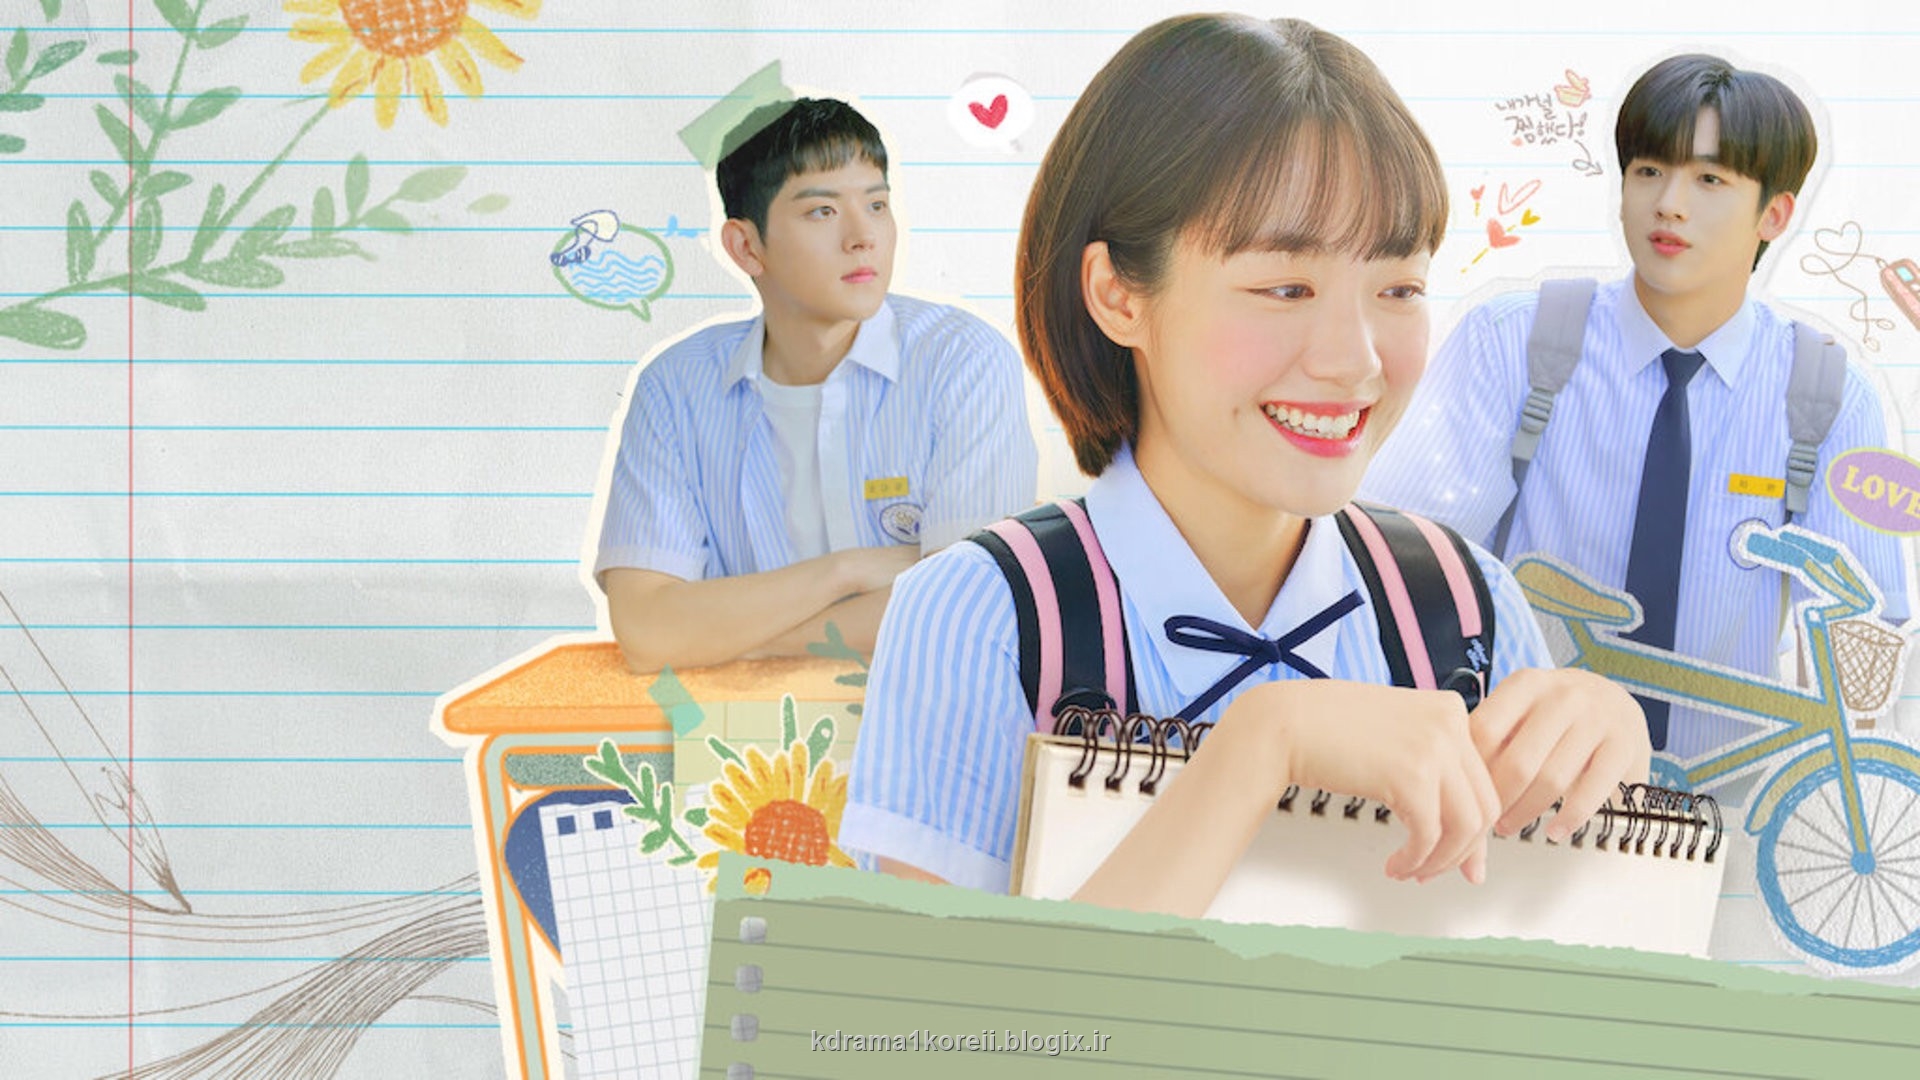 سریال کره ای دبیرستانی عاشقانه